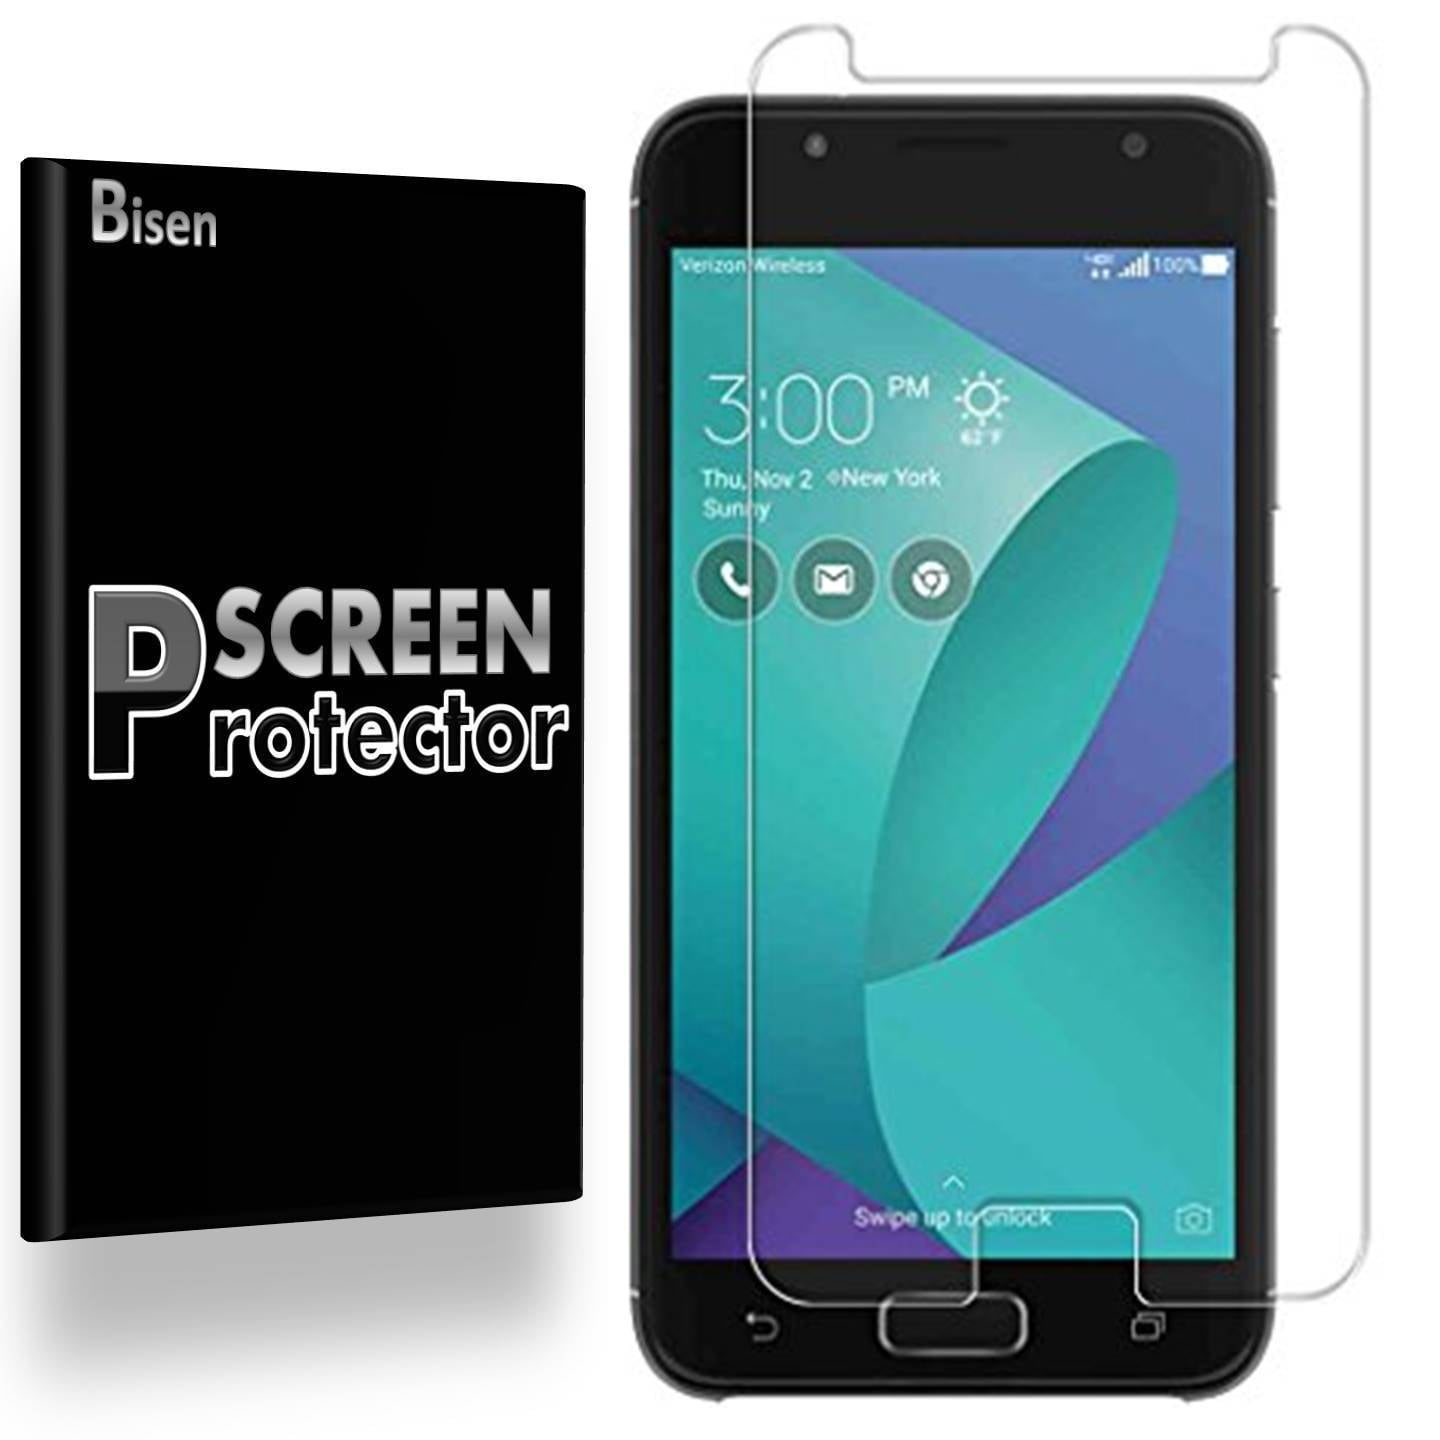 ASUS Zenfone V [4-Pack BISEN] Ultra Clear Screen Protector, Anti-Scratch, Anti-Shock